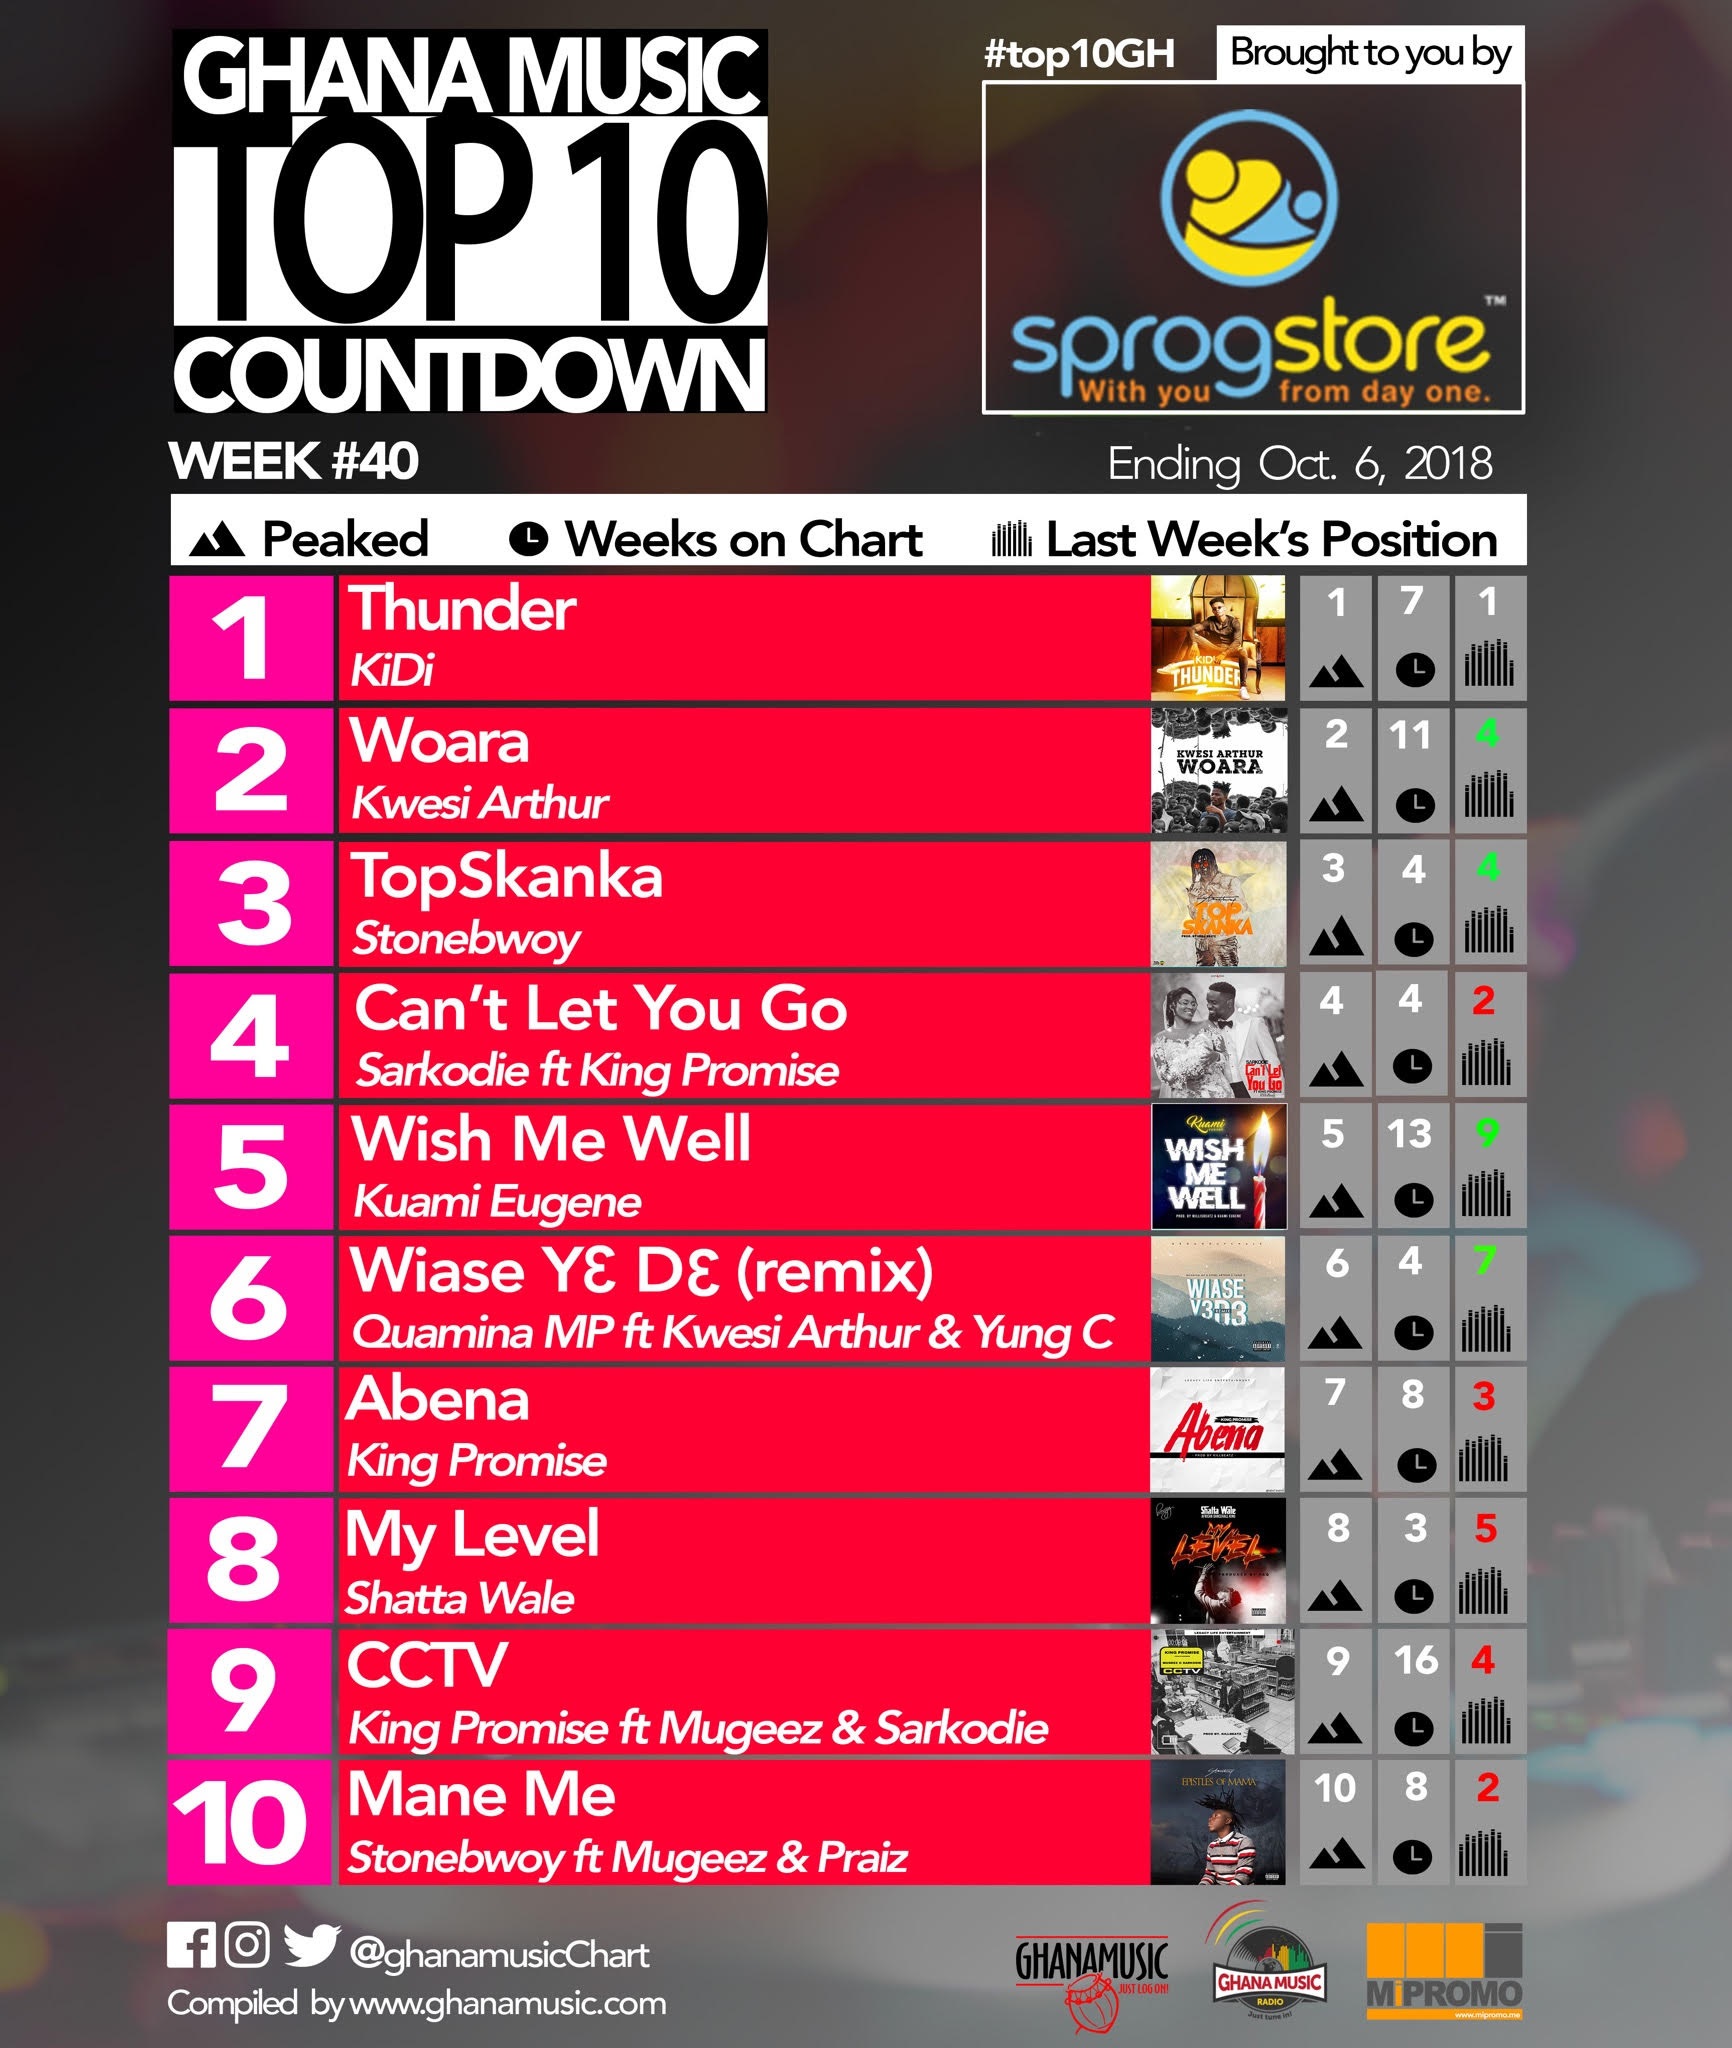 Week #40: Ghana Music Top 10 Countdown